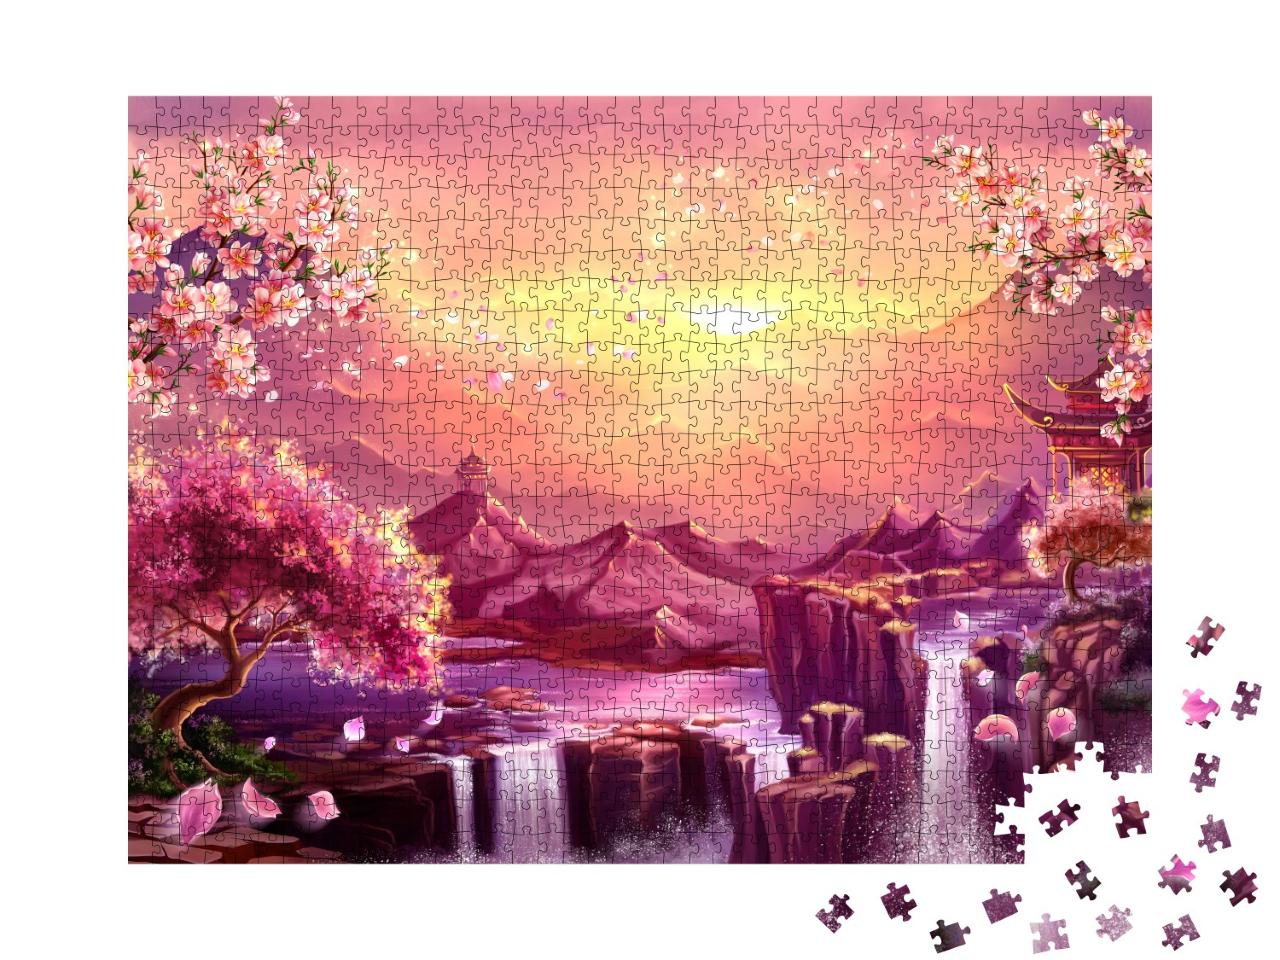 Puzzle 1000 Teile „Digitale Kunst: Japanische Kirschblüte in der Dämmerung der Berge “